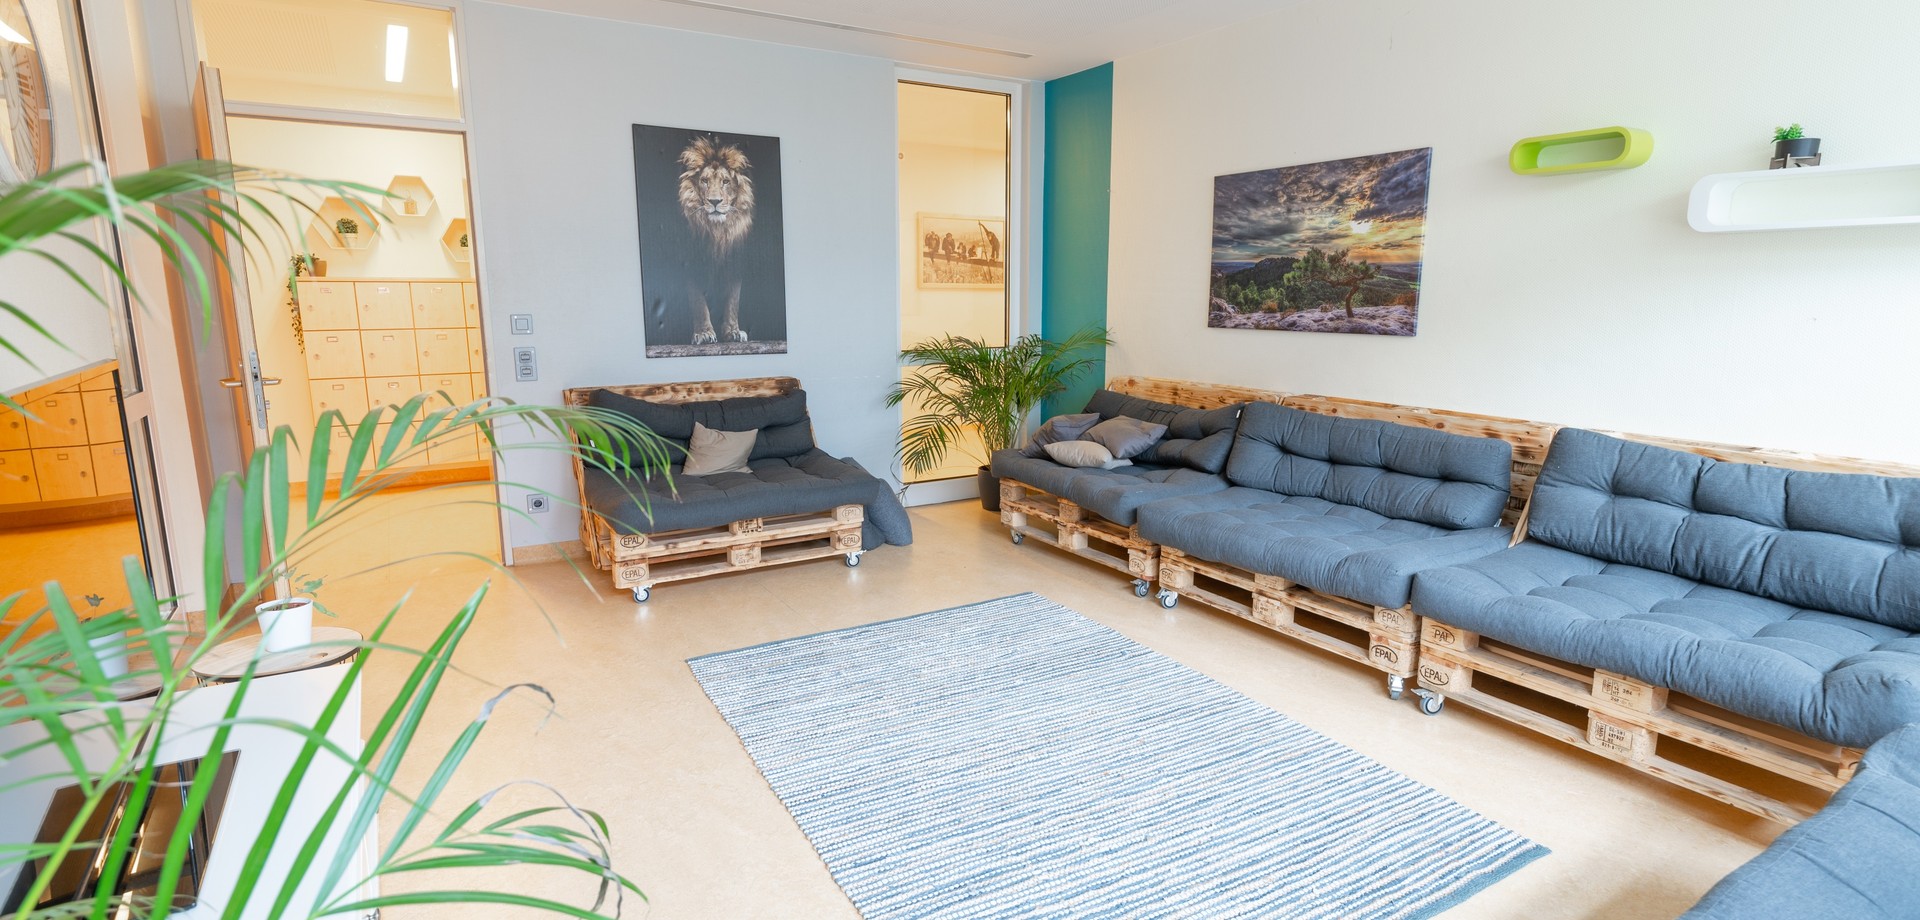 Das Bild zeigt ein Zimmer, in dem ein Sessel und ein Sofa mit grauen Kissen und zwei grüne Pflanzen stehen. An der Wand hängt ein Bild mit einem Löwen